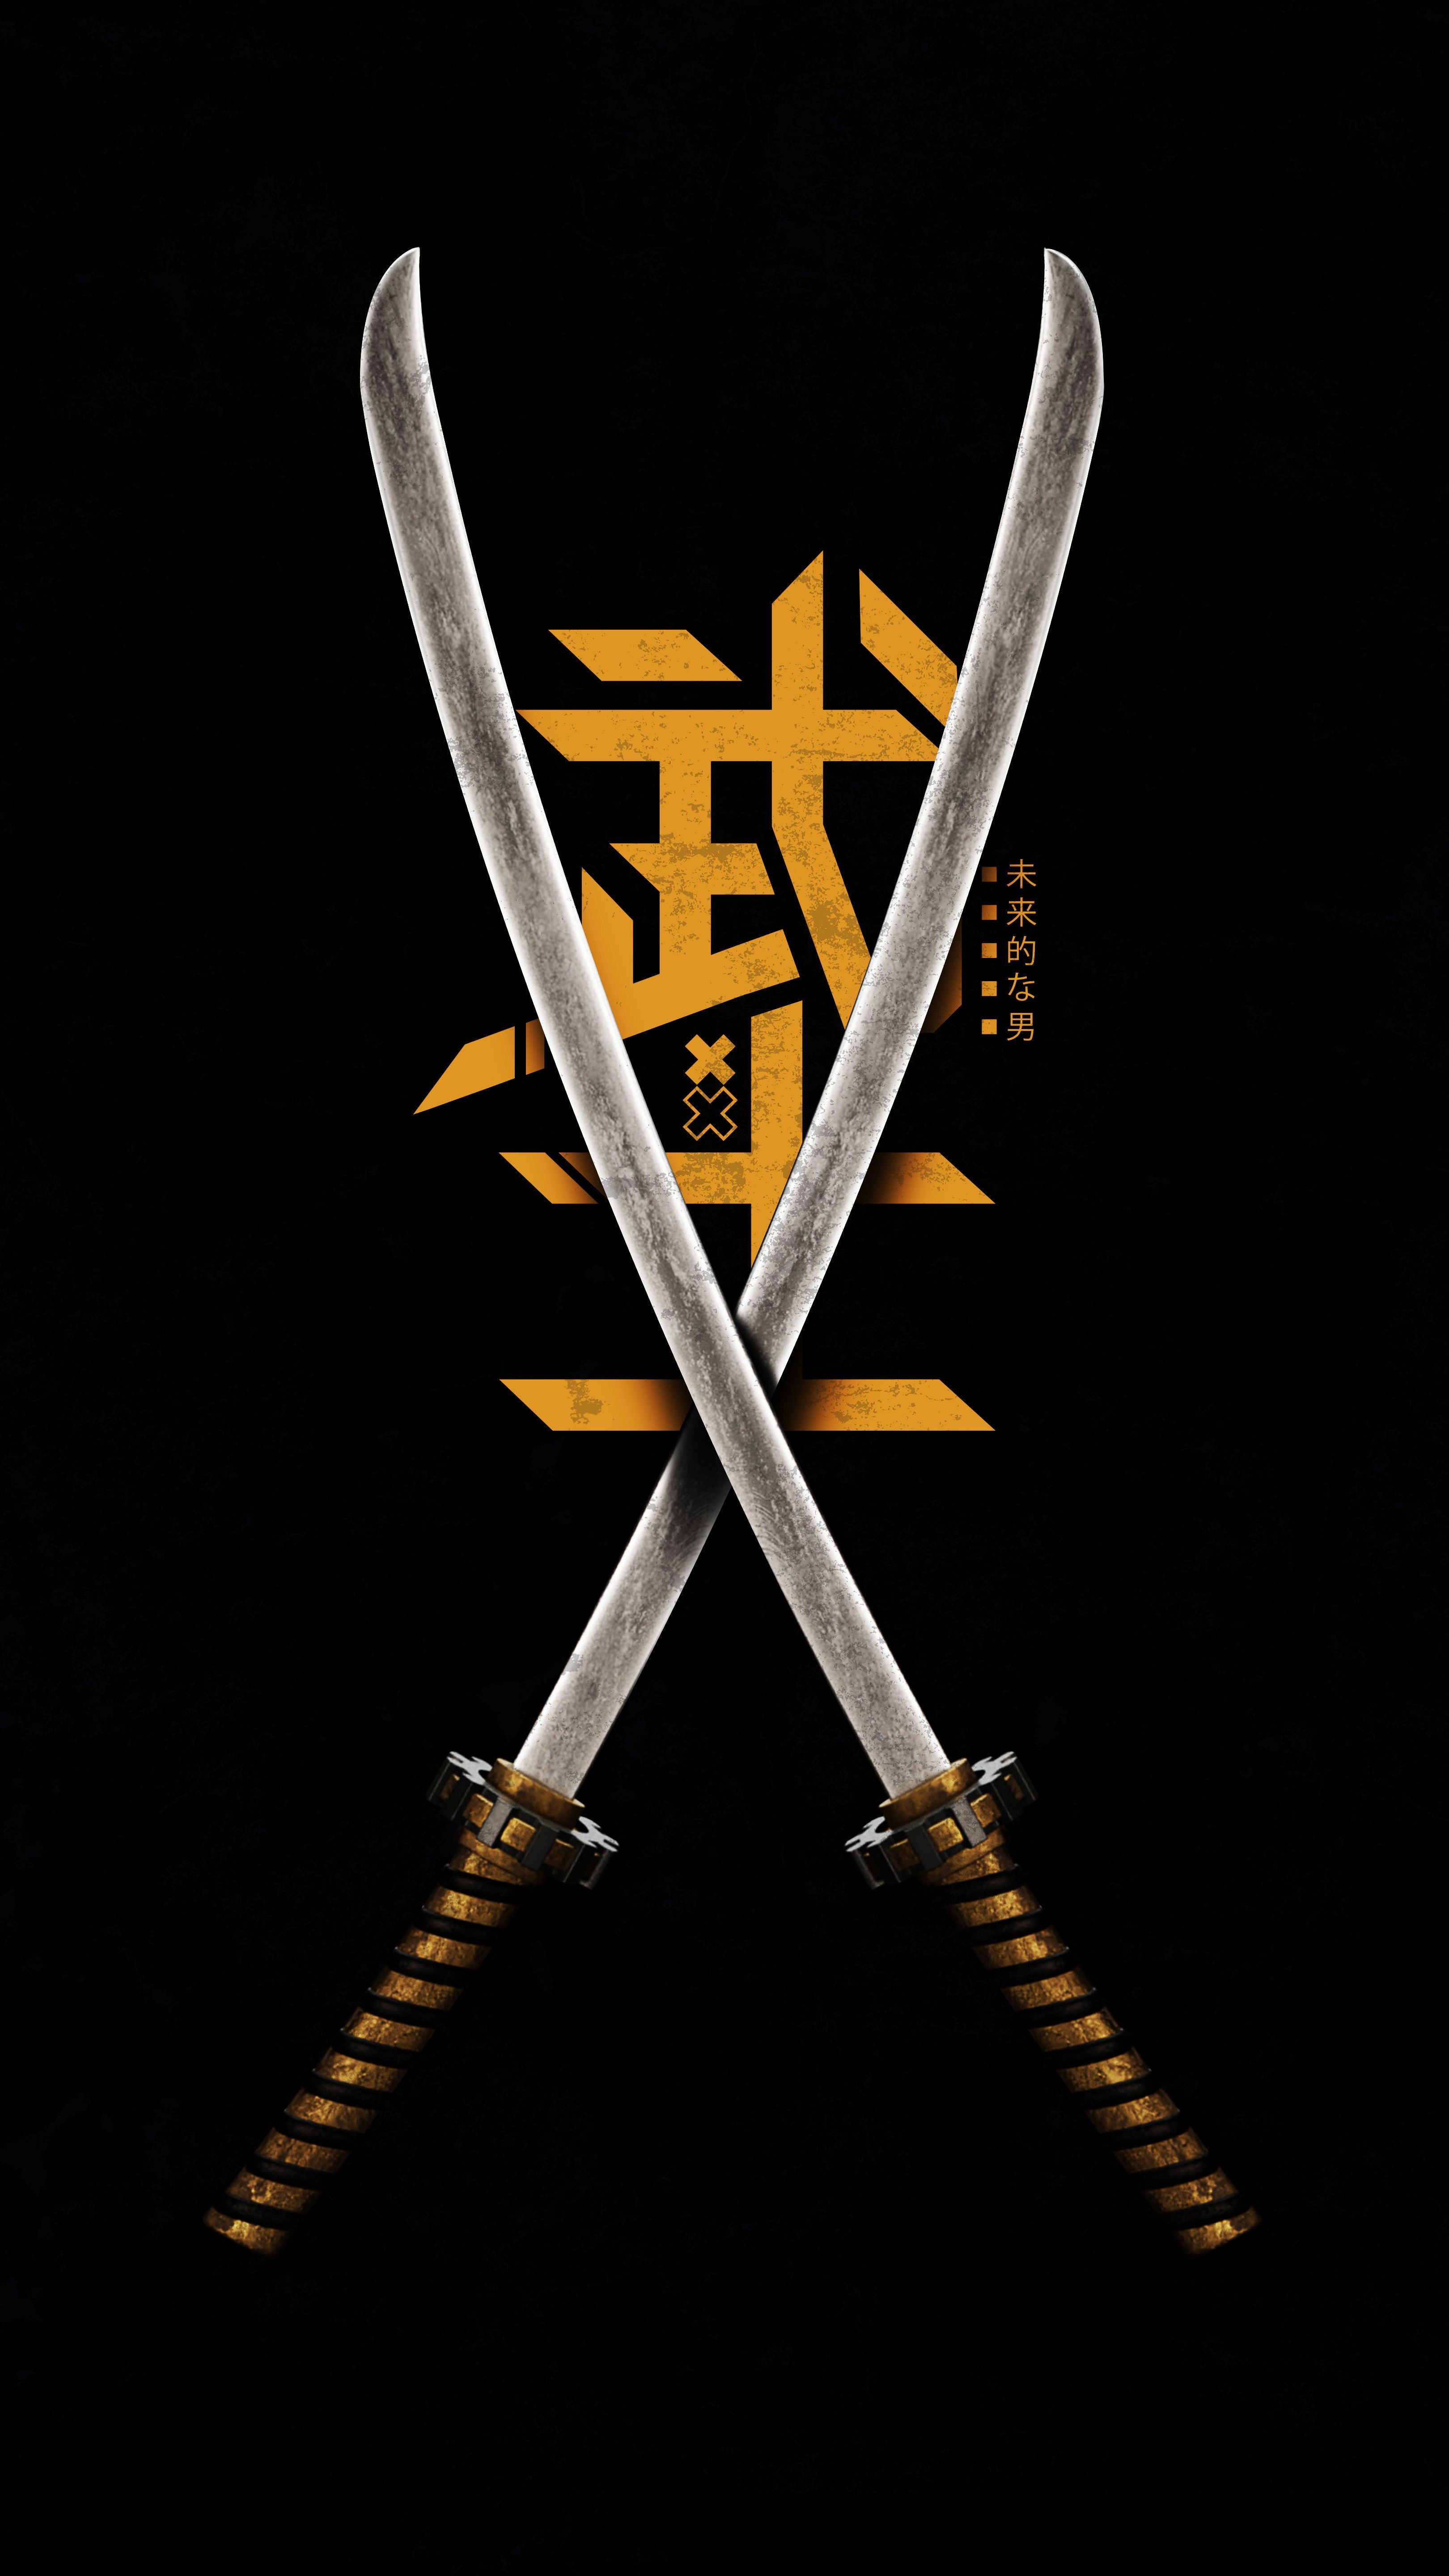 Japan Sword Mobile HD Wallpaper. Deadpool HD wallpaper, Motorola wallpaper, iPhone wallpaper image